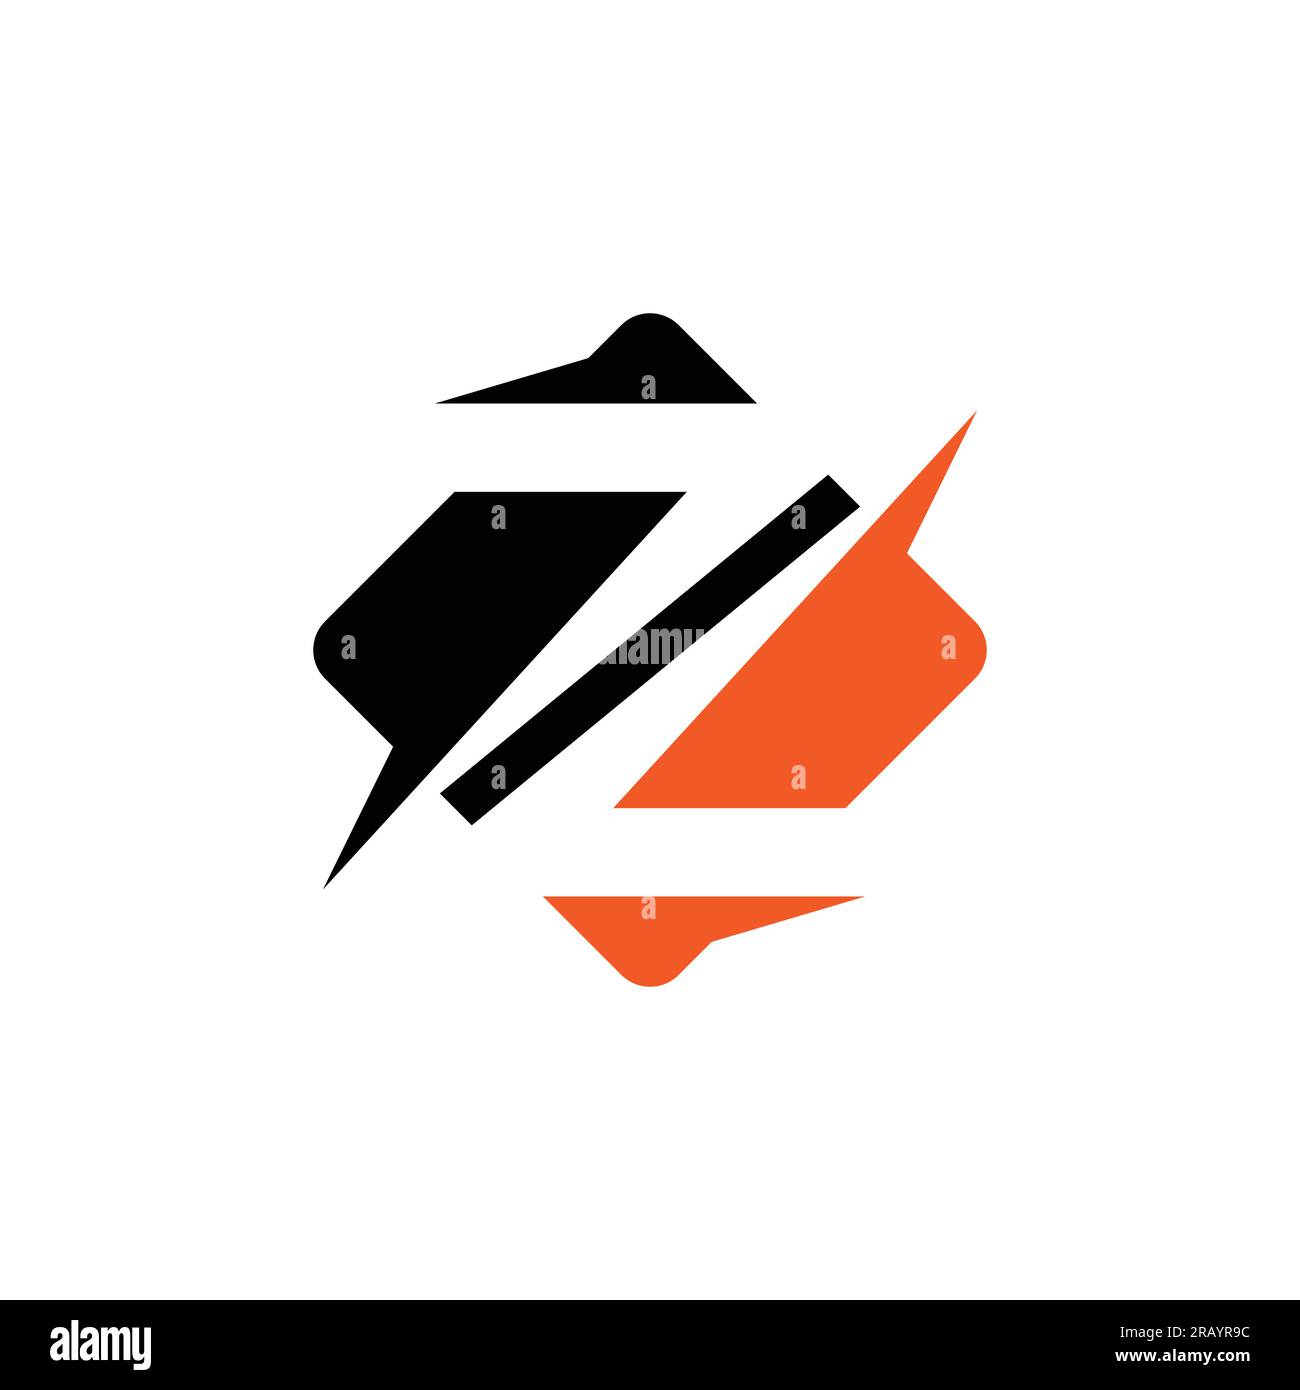 Abstrakter Buchstabe z Logo mit anfänglichem z mit kreativem Vektorbild. Letter Z-Logo mit Creative Modern Business Typography Vector Template. Kreativer Abstract Stock Vektor